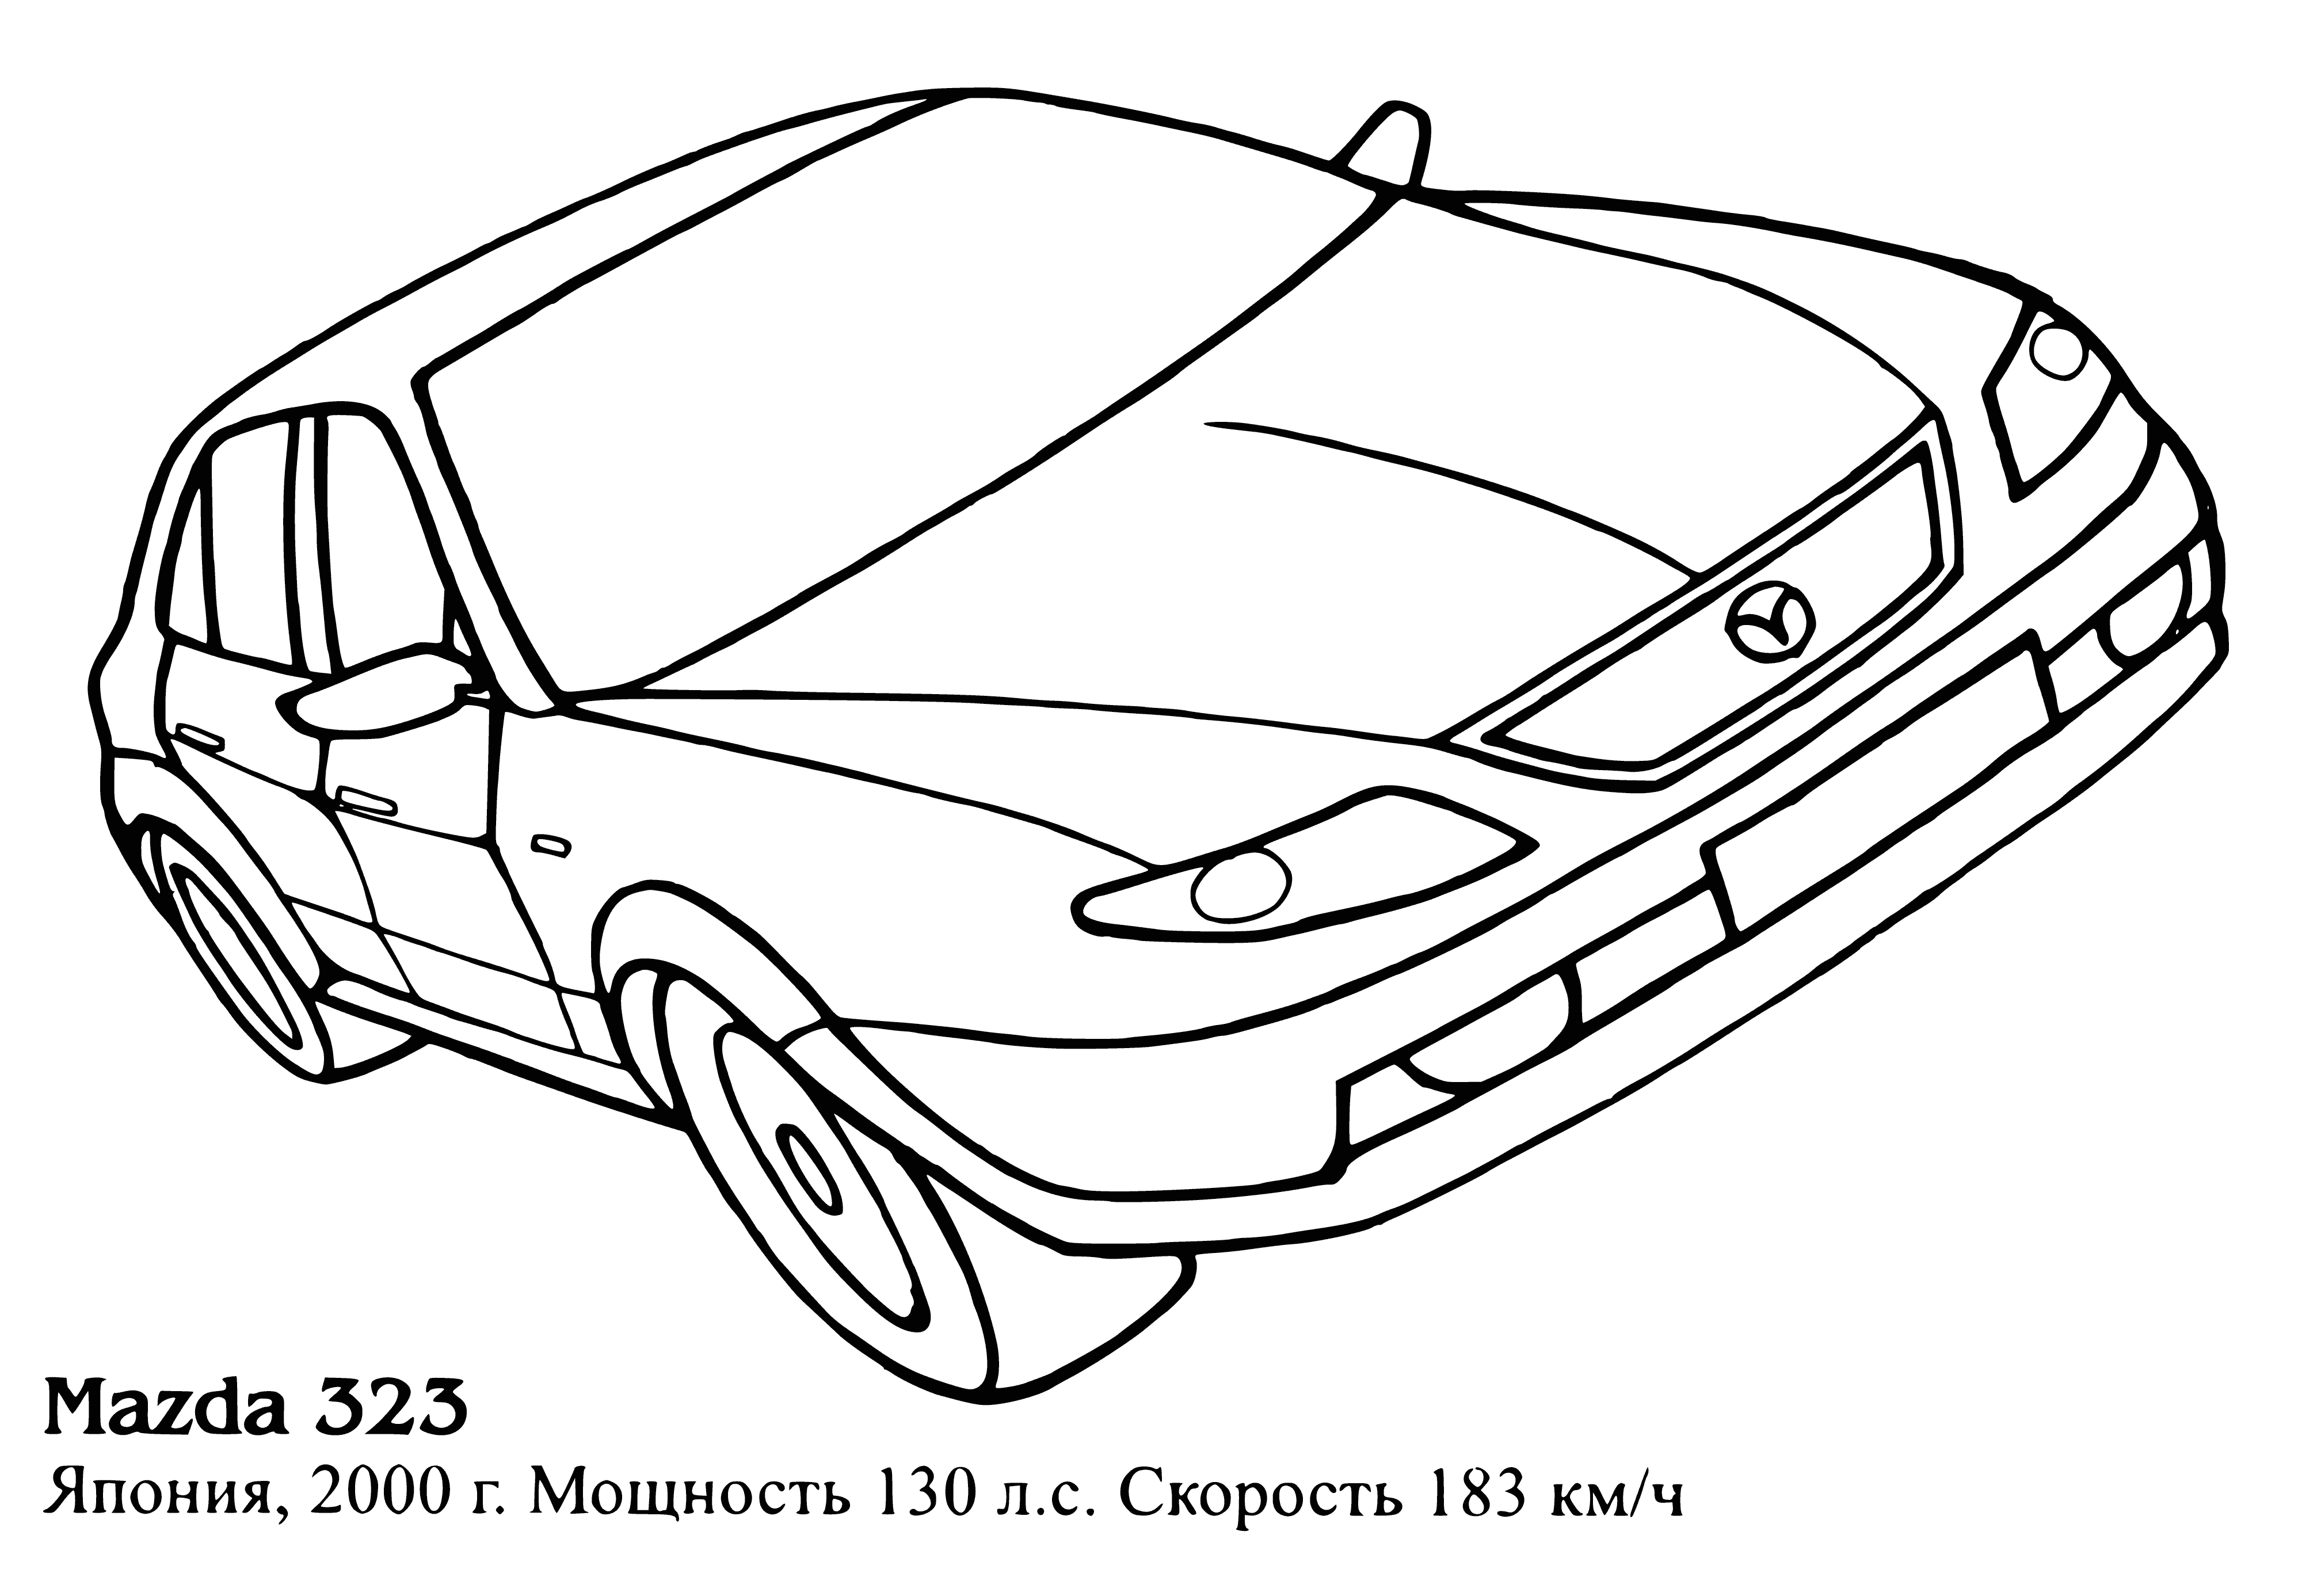 Mazda 323 coloriage